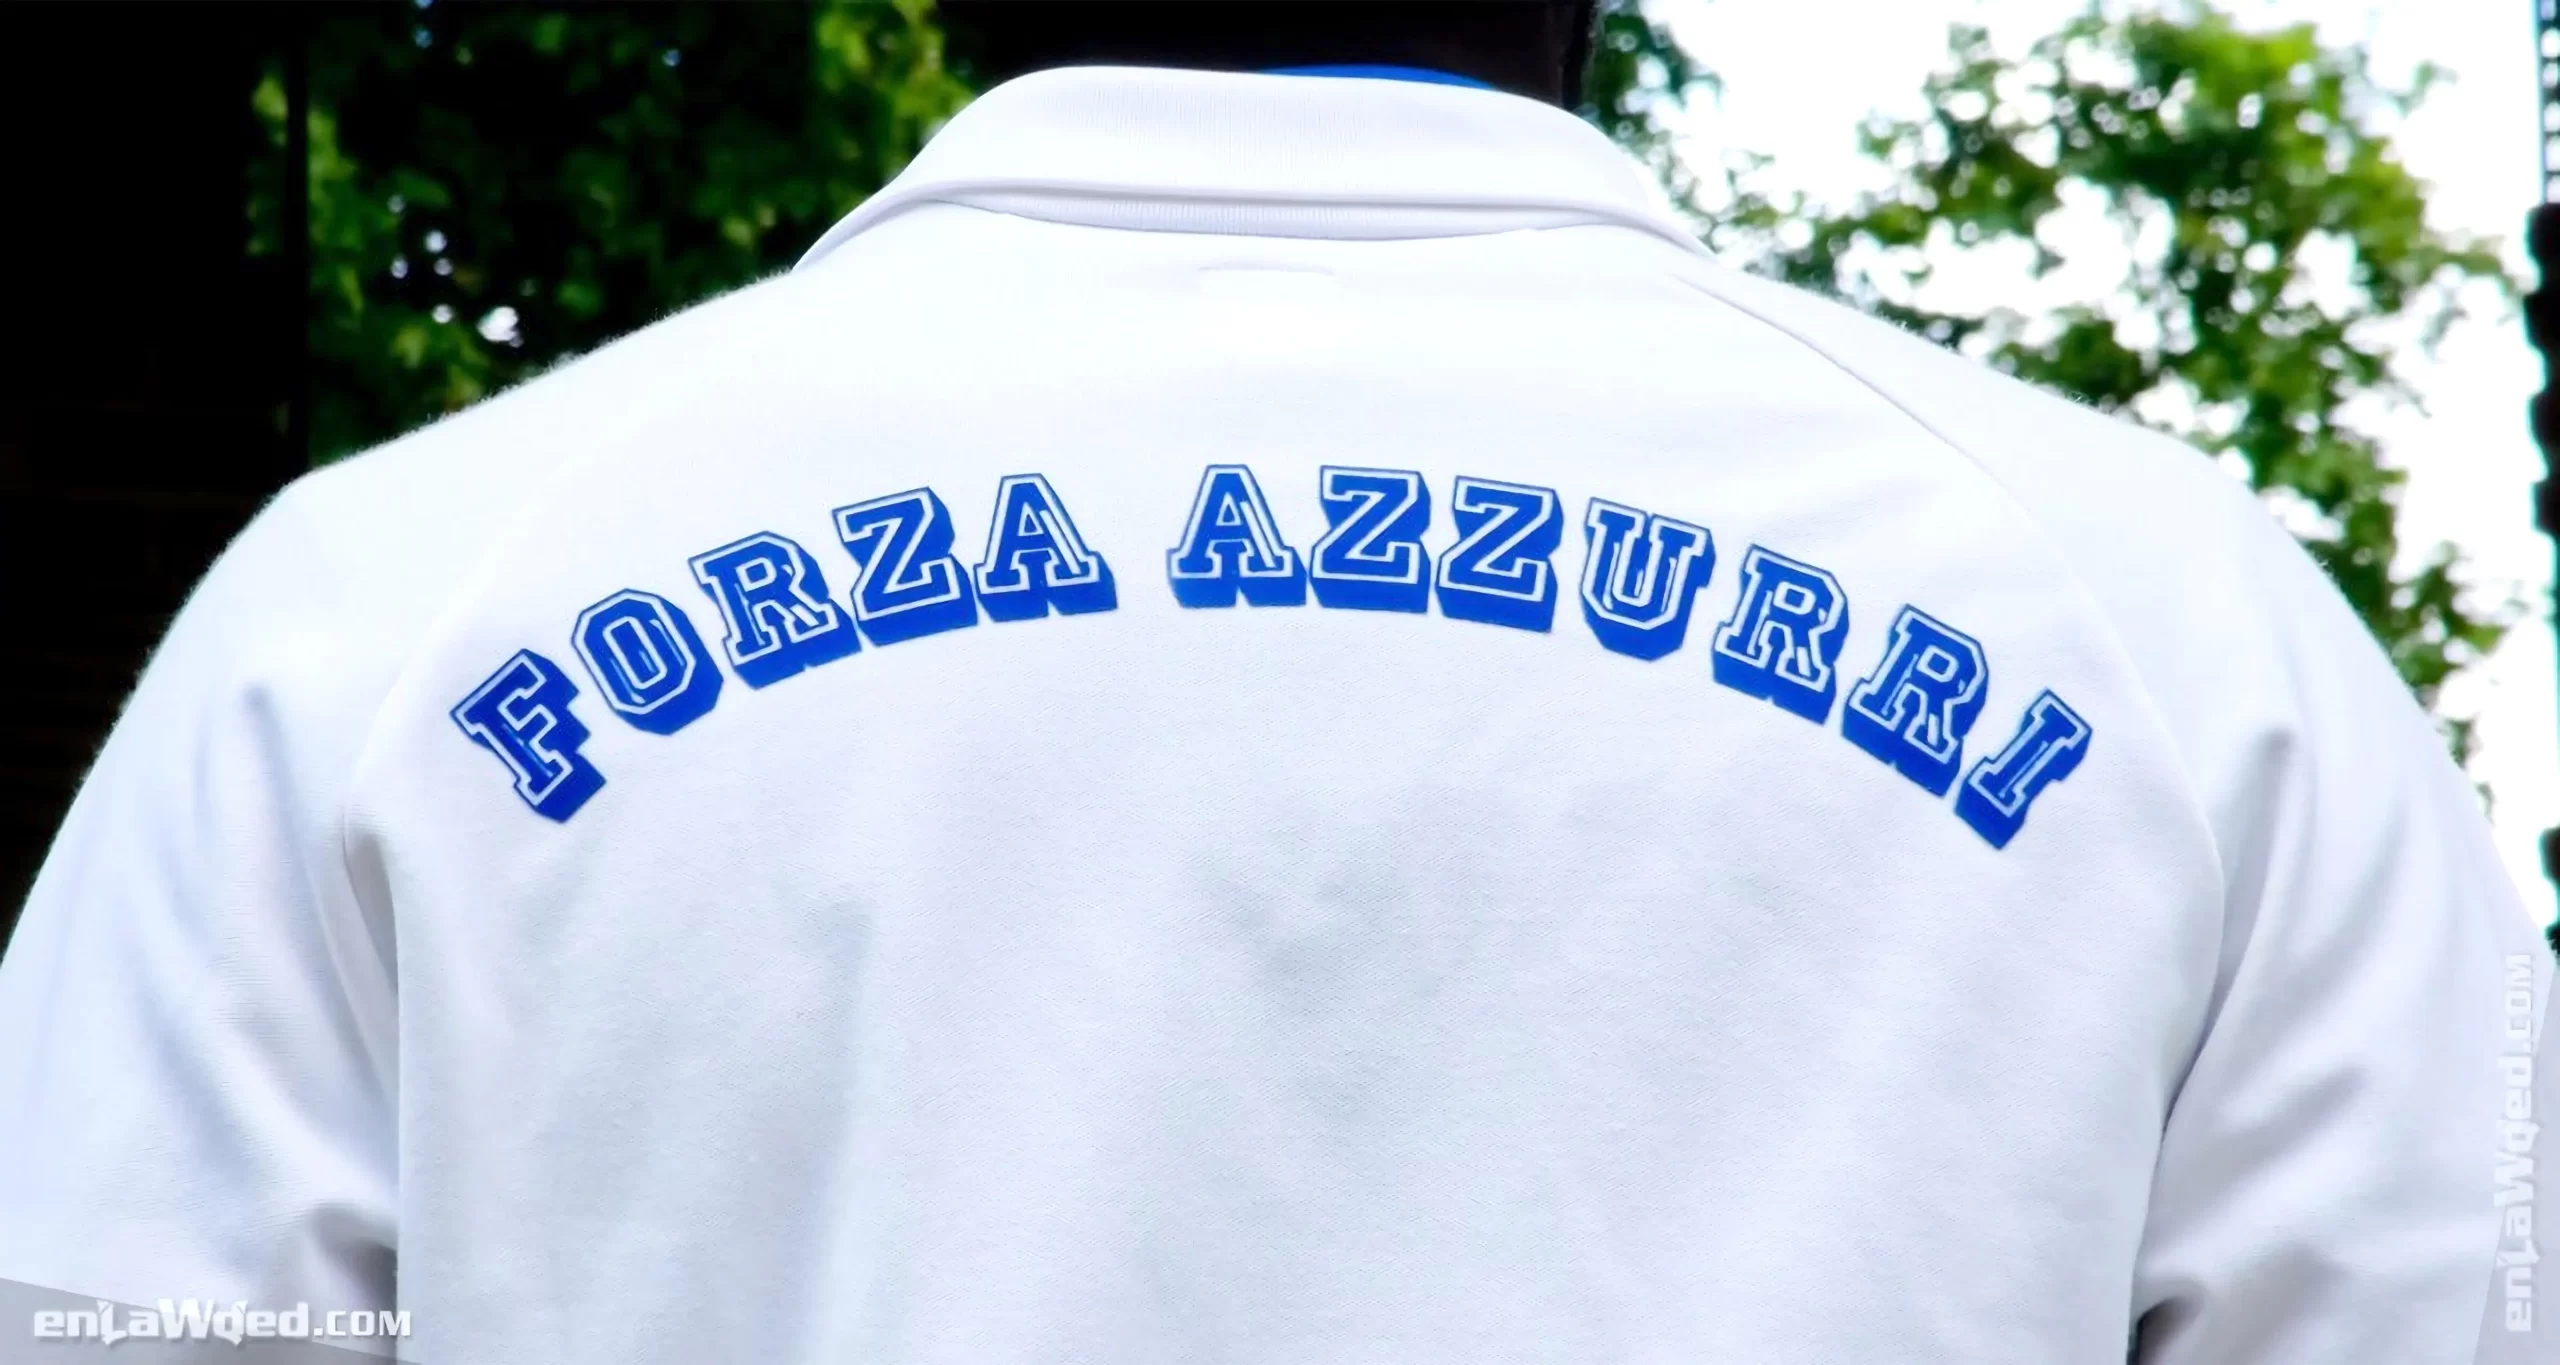 Men’s 2006 Italia ’82 Forza Azzurri TT by Adidas Originals: Complete (EnLawded.com file #lmc44o7hh9fq7mpikqa)